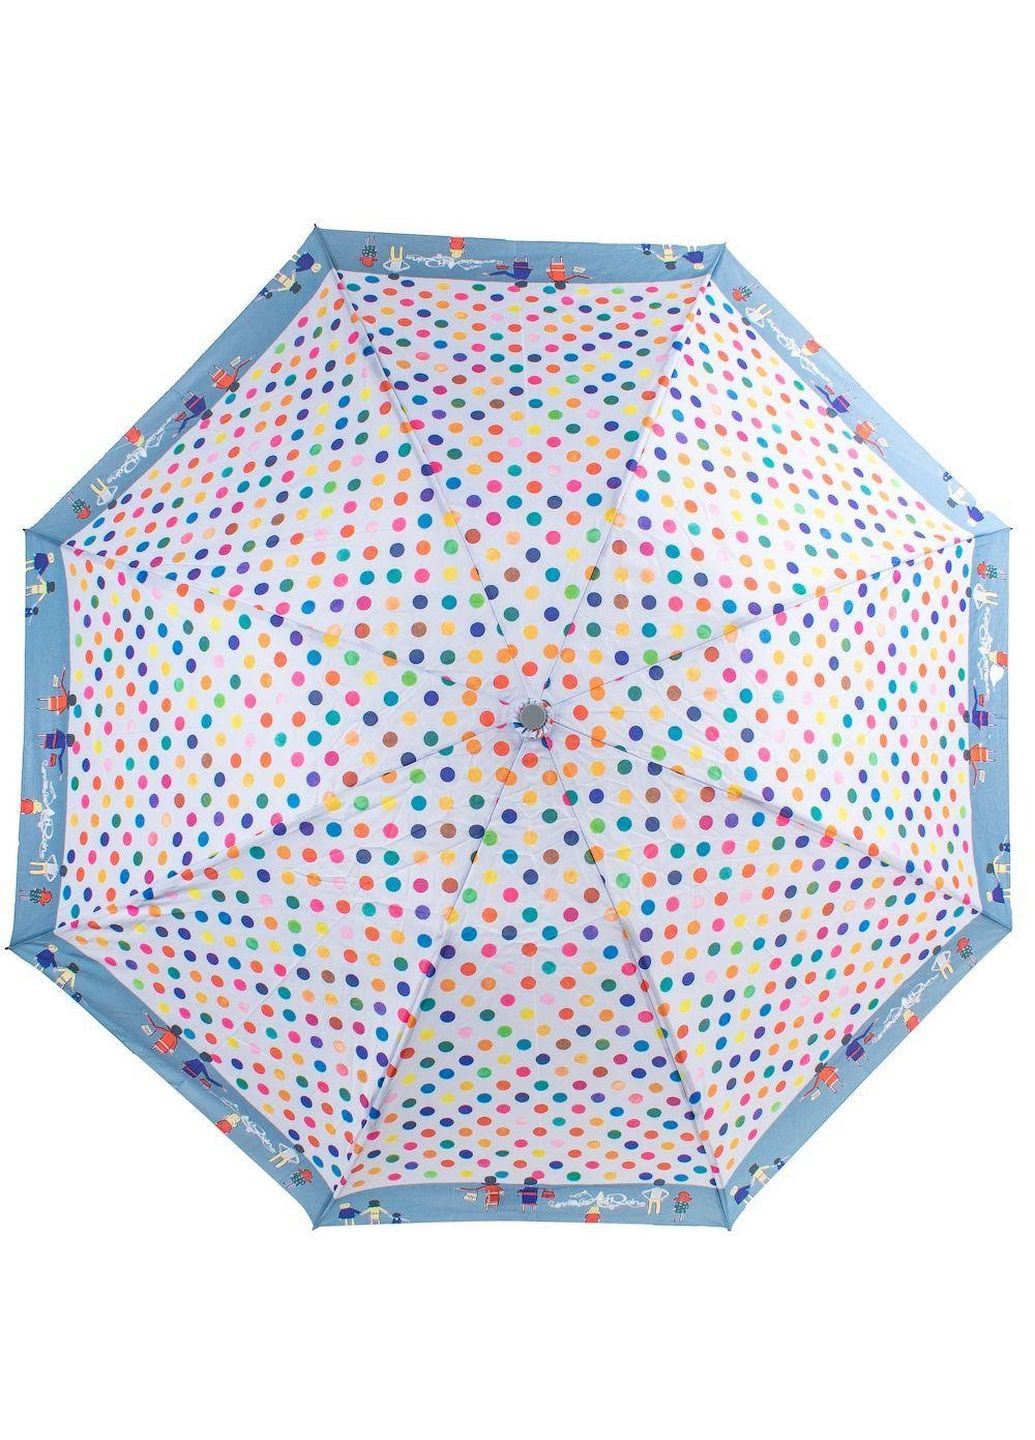 Женский складной зонт полный автомат Art rain (282590326)